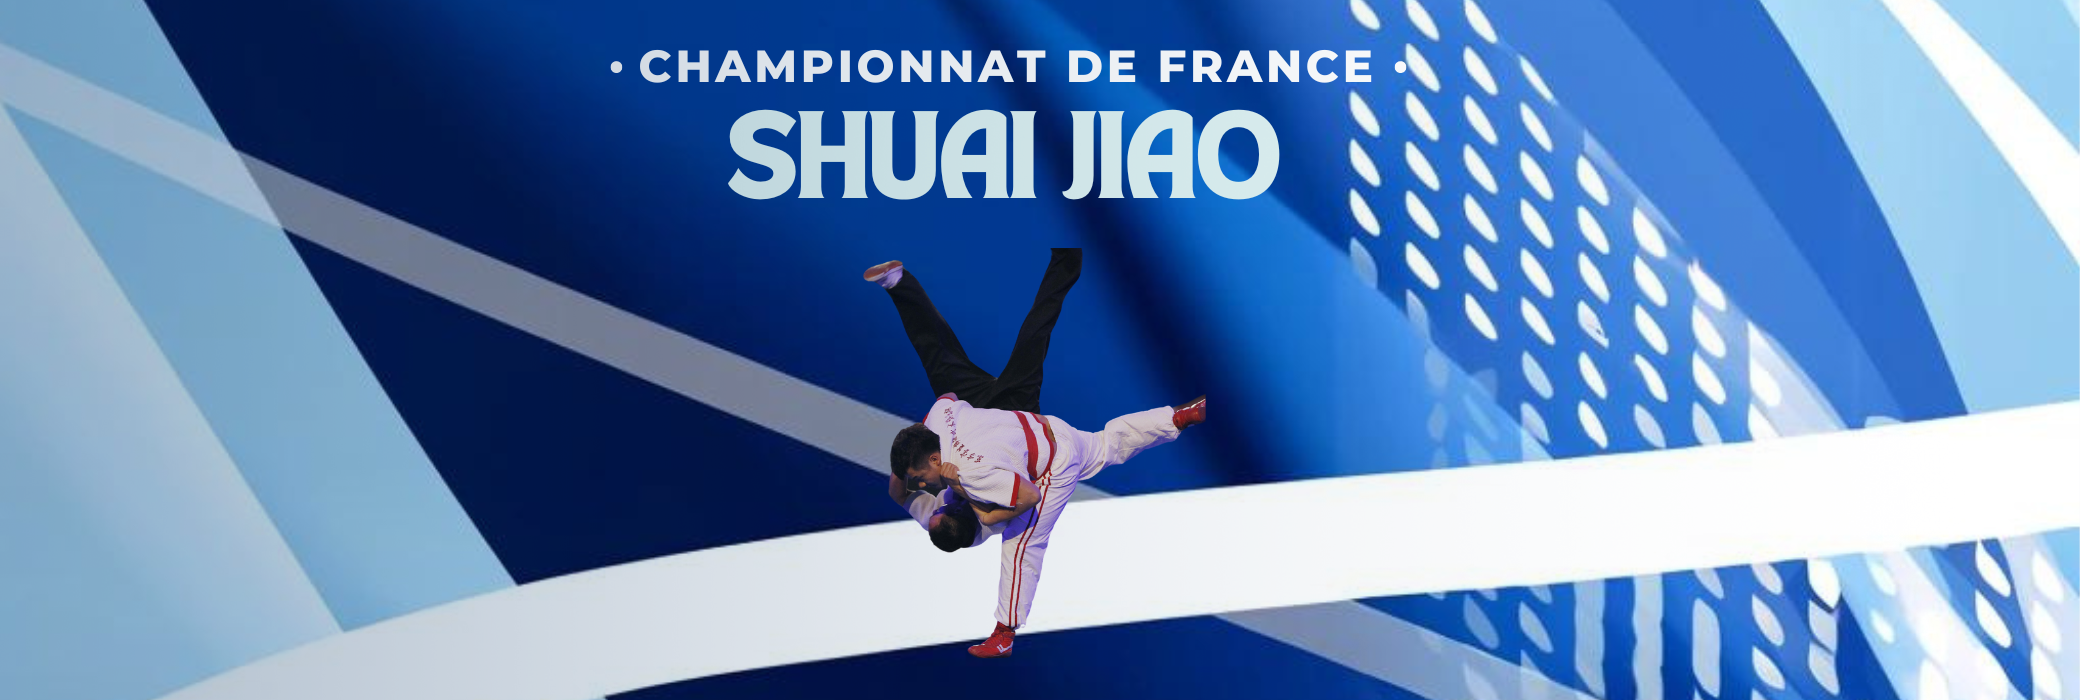 Championnat de france de shuai jiao